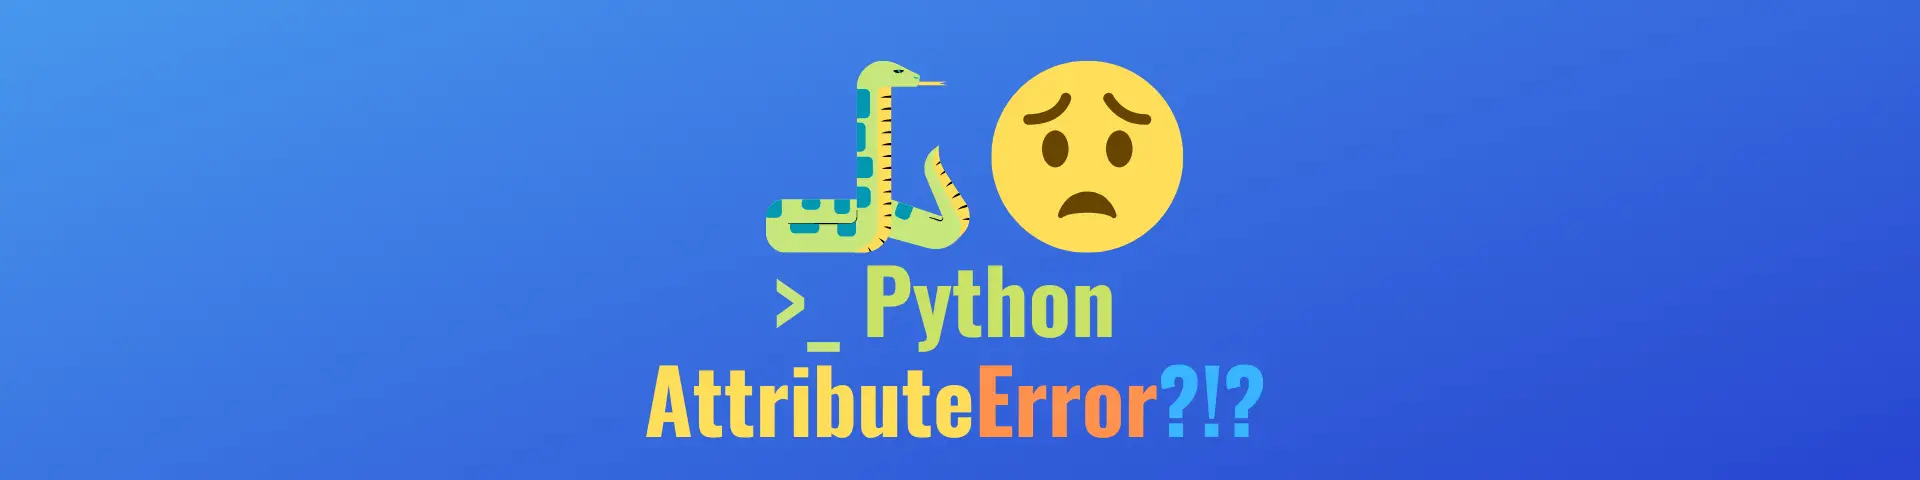 Python AttributeError